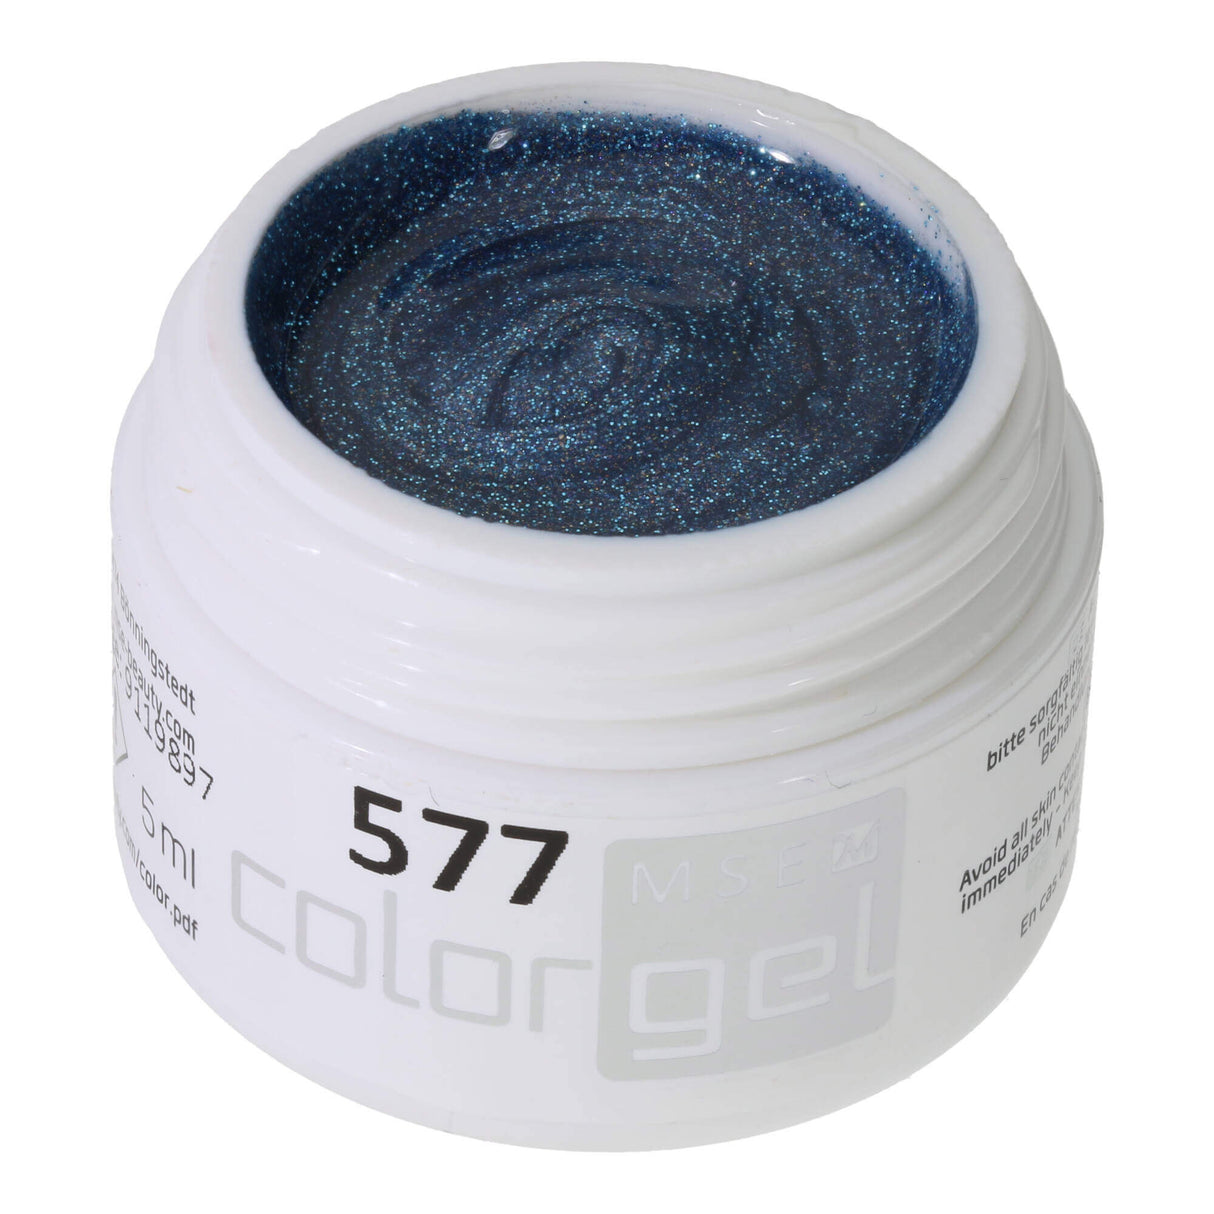 # 577 Premium GLITTER Color Gel 5ml gray